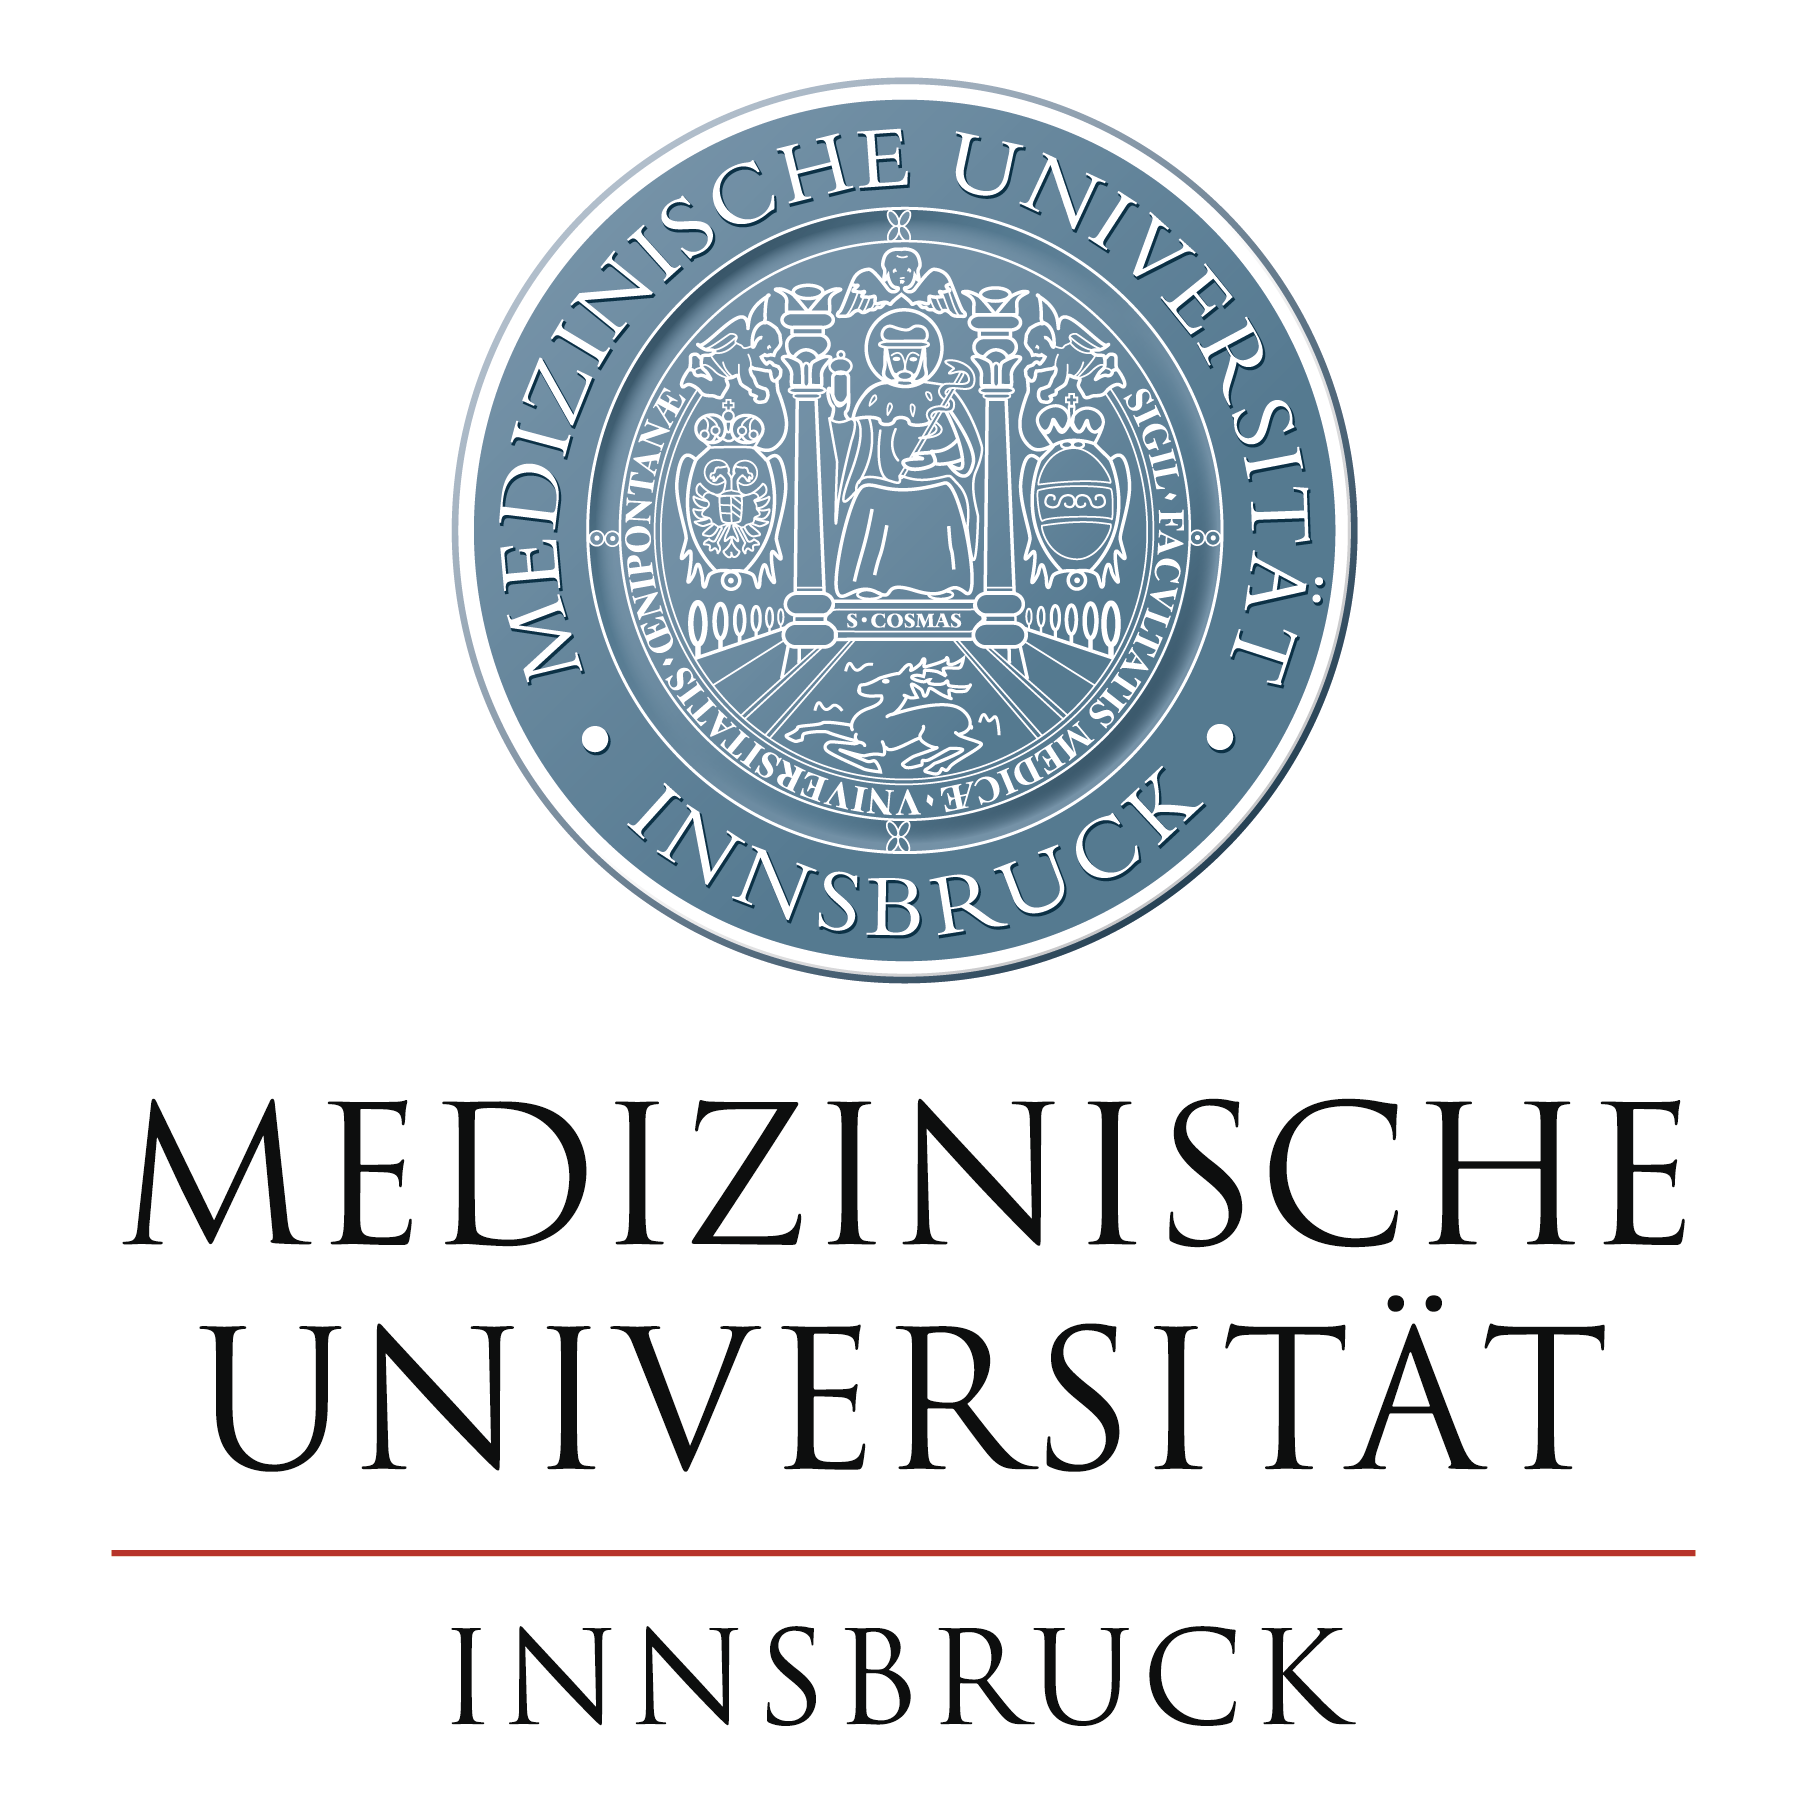 Innsbrucker Radiologin leitete EU-Schlaganfall-Studie in Österreich